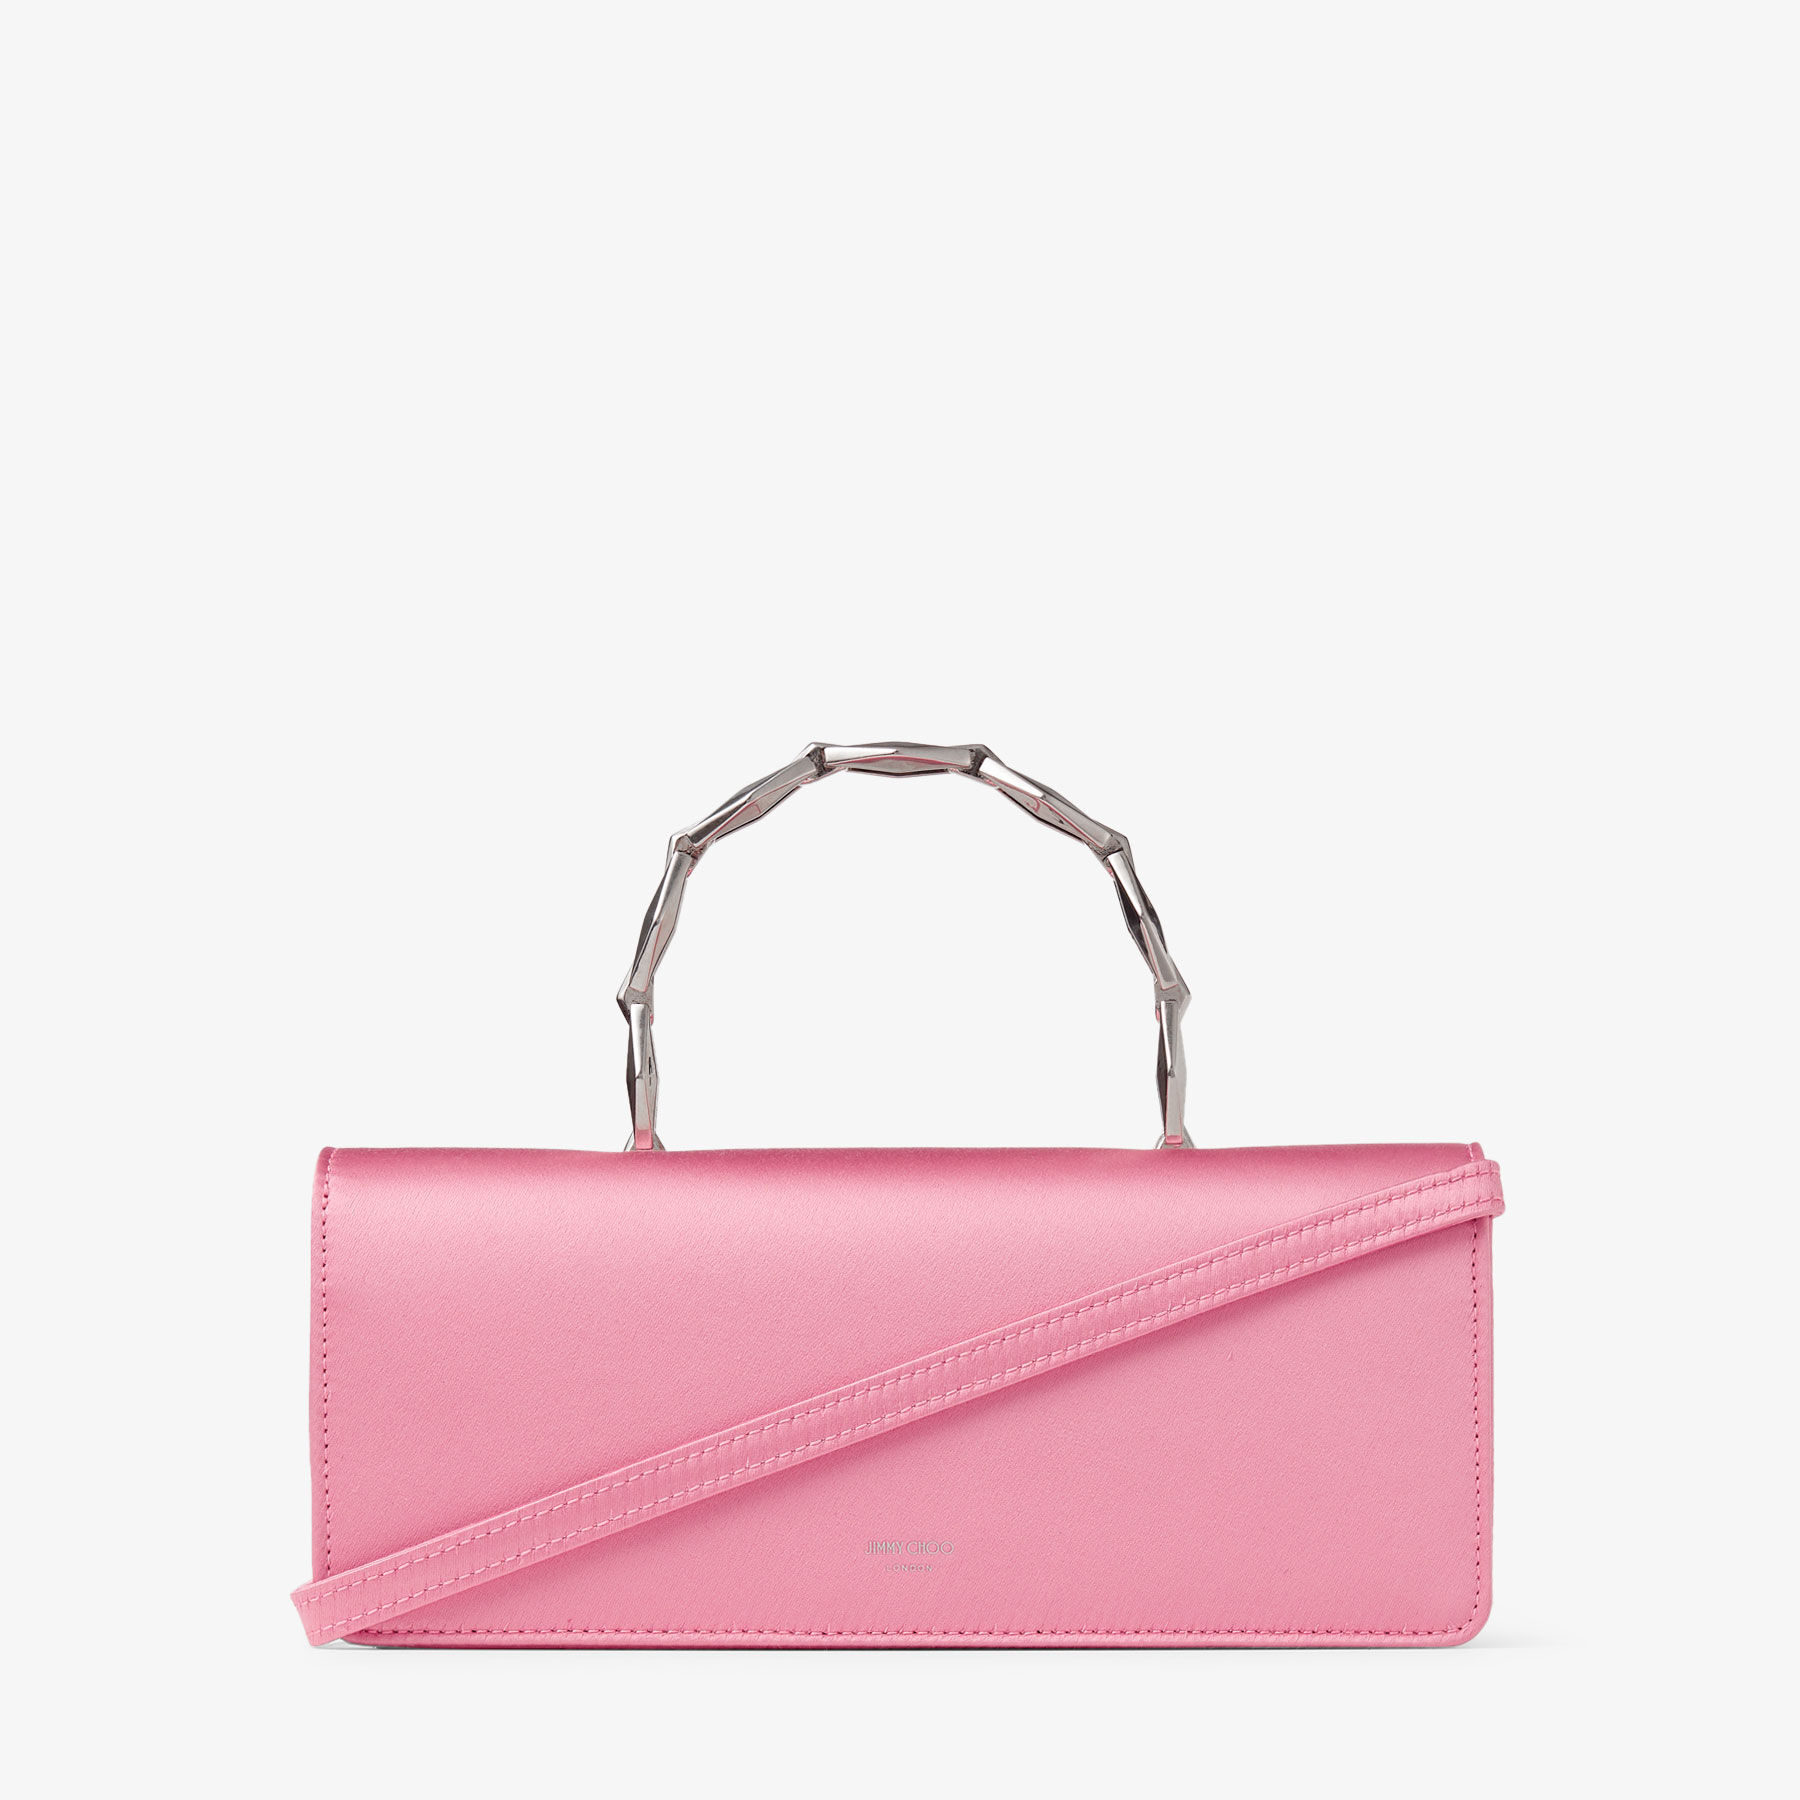 Callie Mini | Candy Pink Metallic Nappa Leather Mini Clutch Bag | JIMMY CHOO